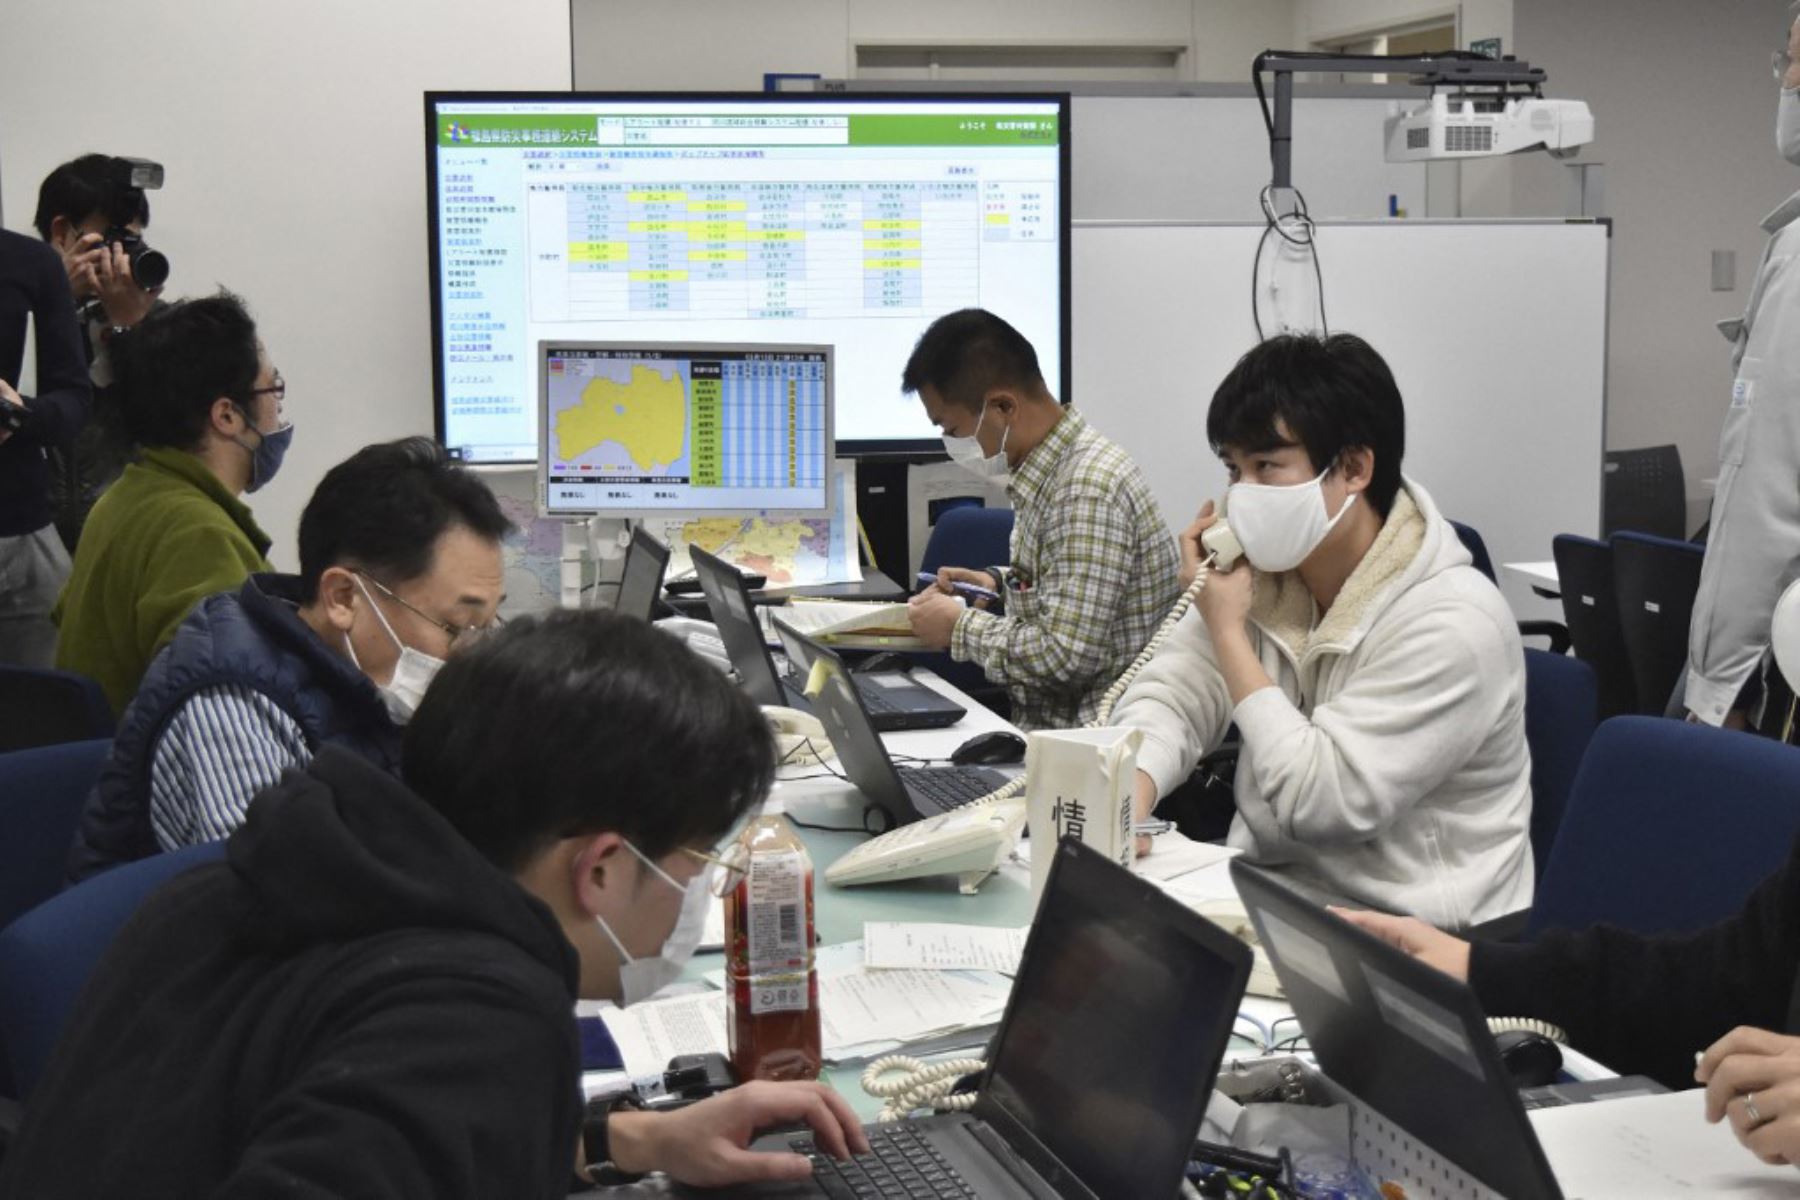 Los funcionarios del gobierno trabajan en la sede de respuesta a desastres en la oficina de la prefectura de Fukushima, después de que un terremoto de magnitud 7.1 golpeara en la costa este de Japón. Foto: AFP